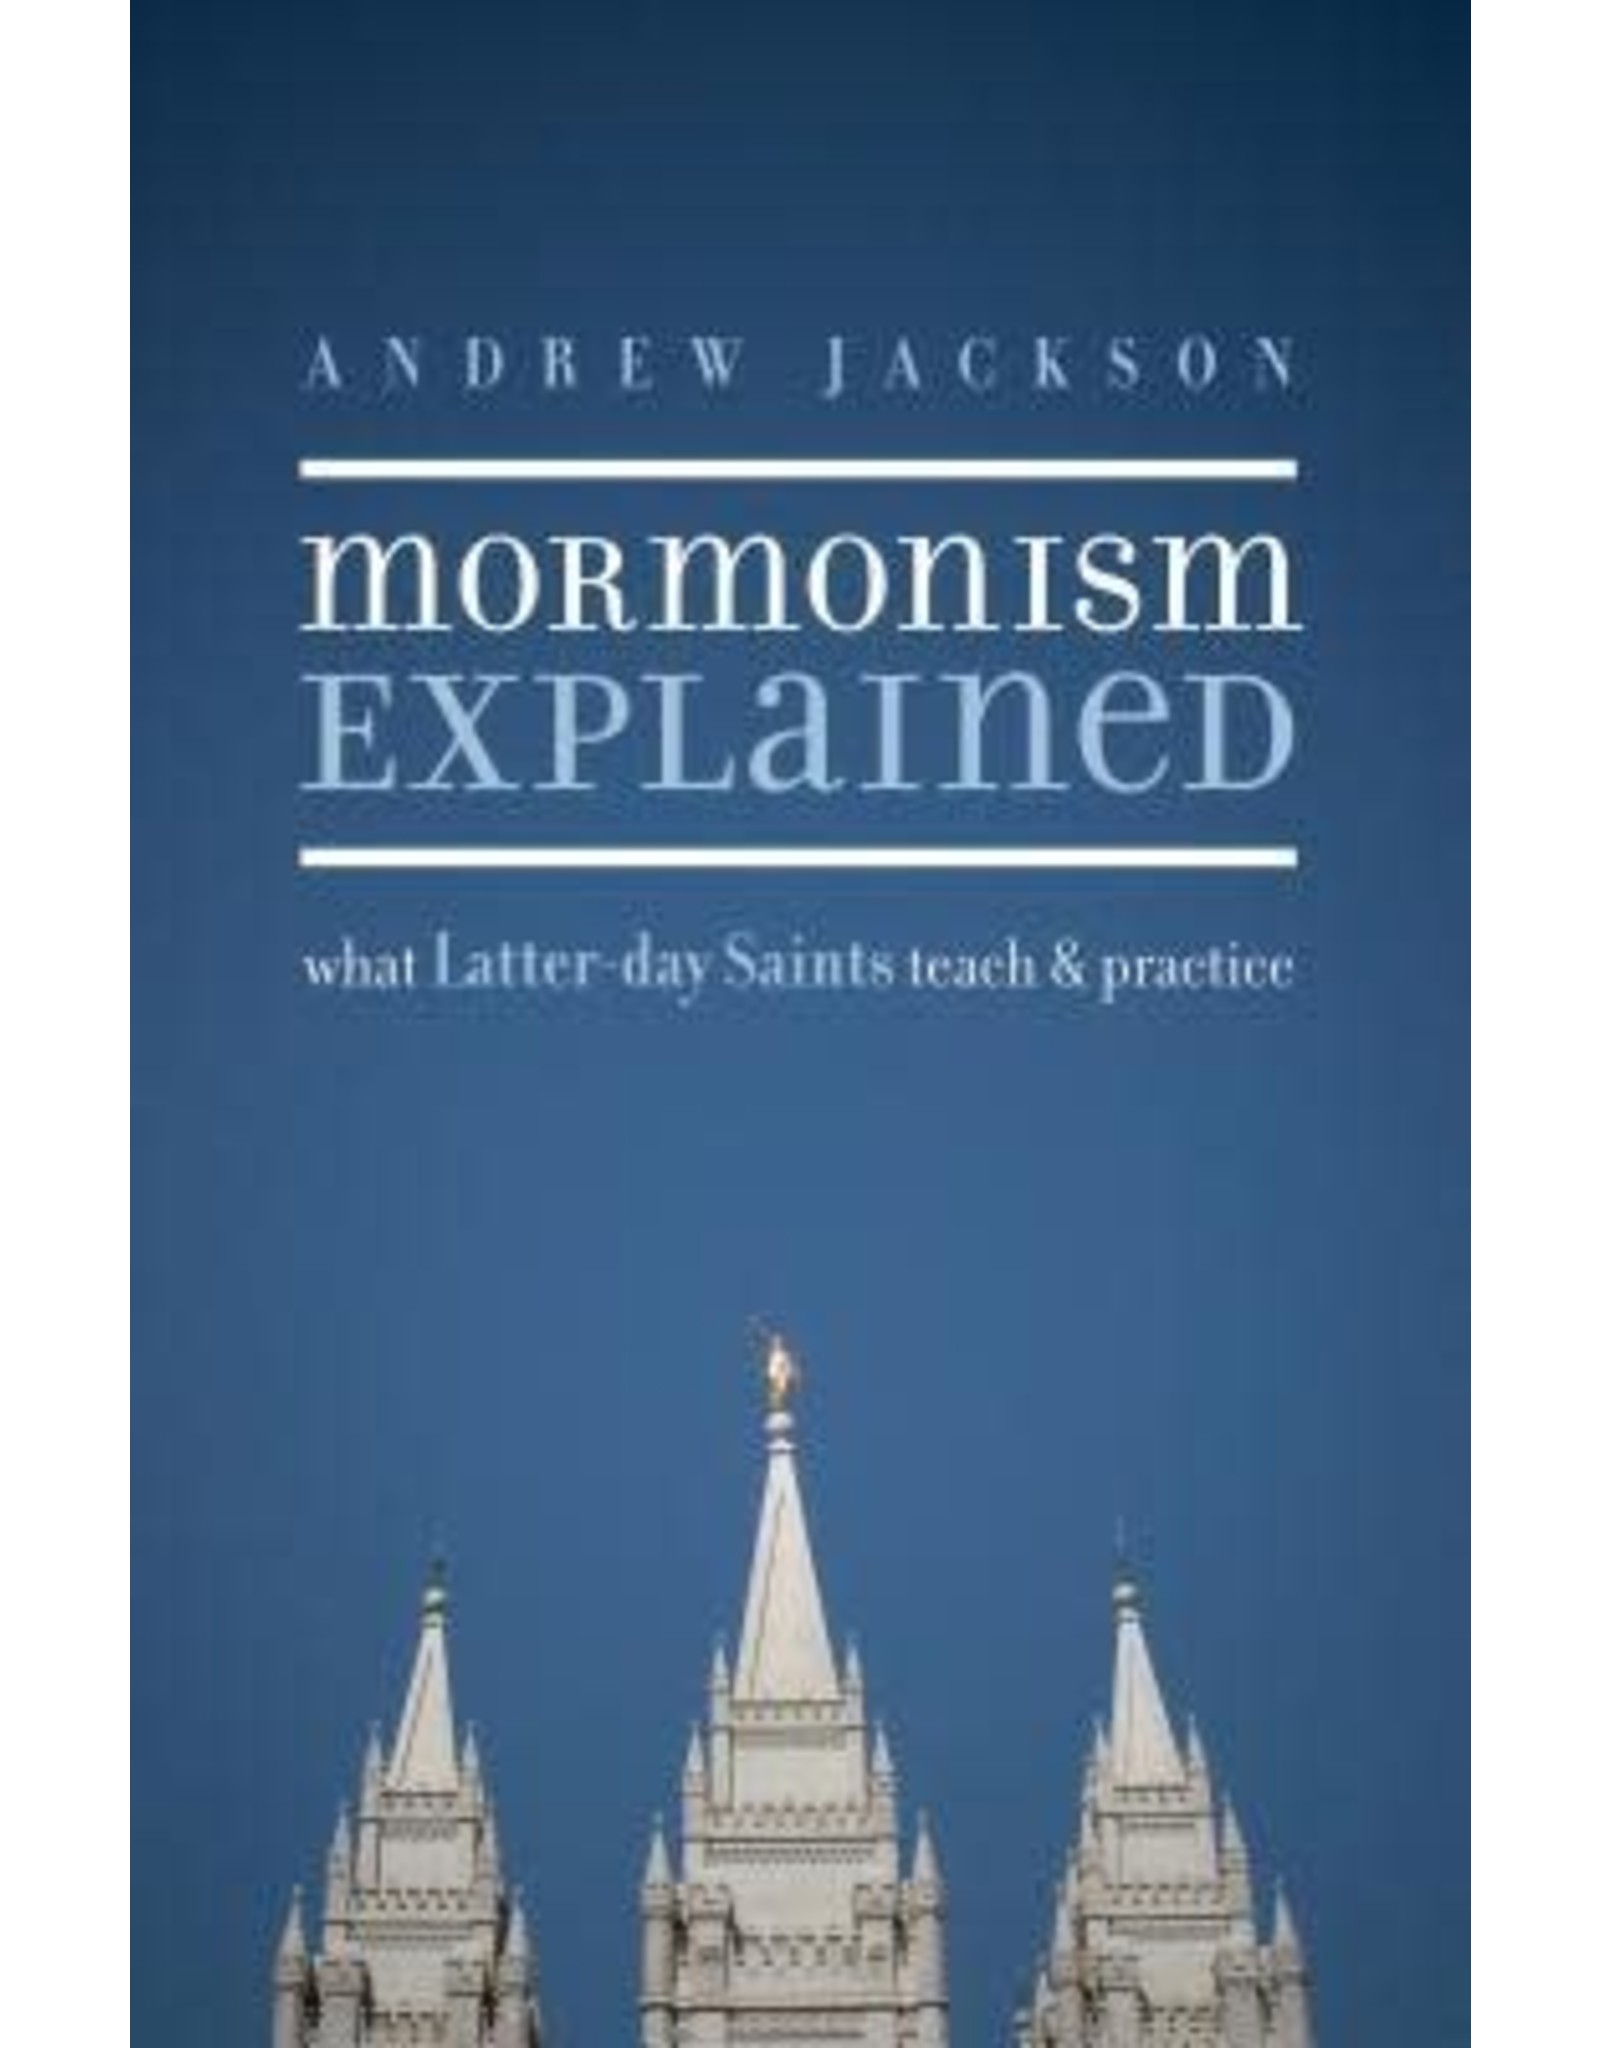 Andrew Jackson Mormonism Explained